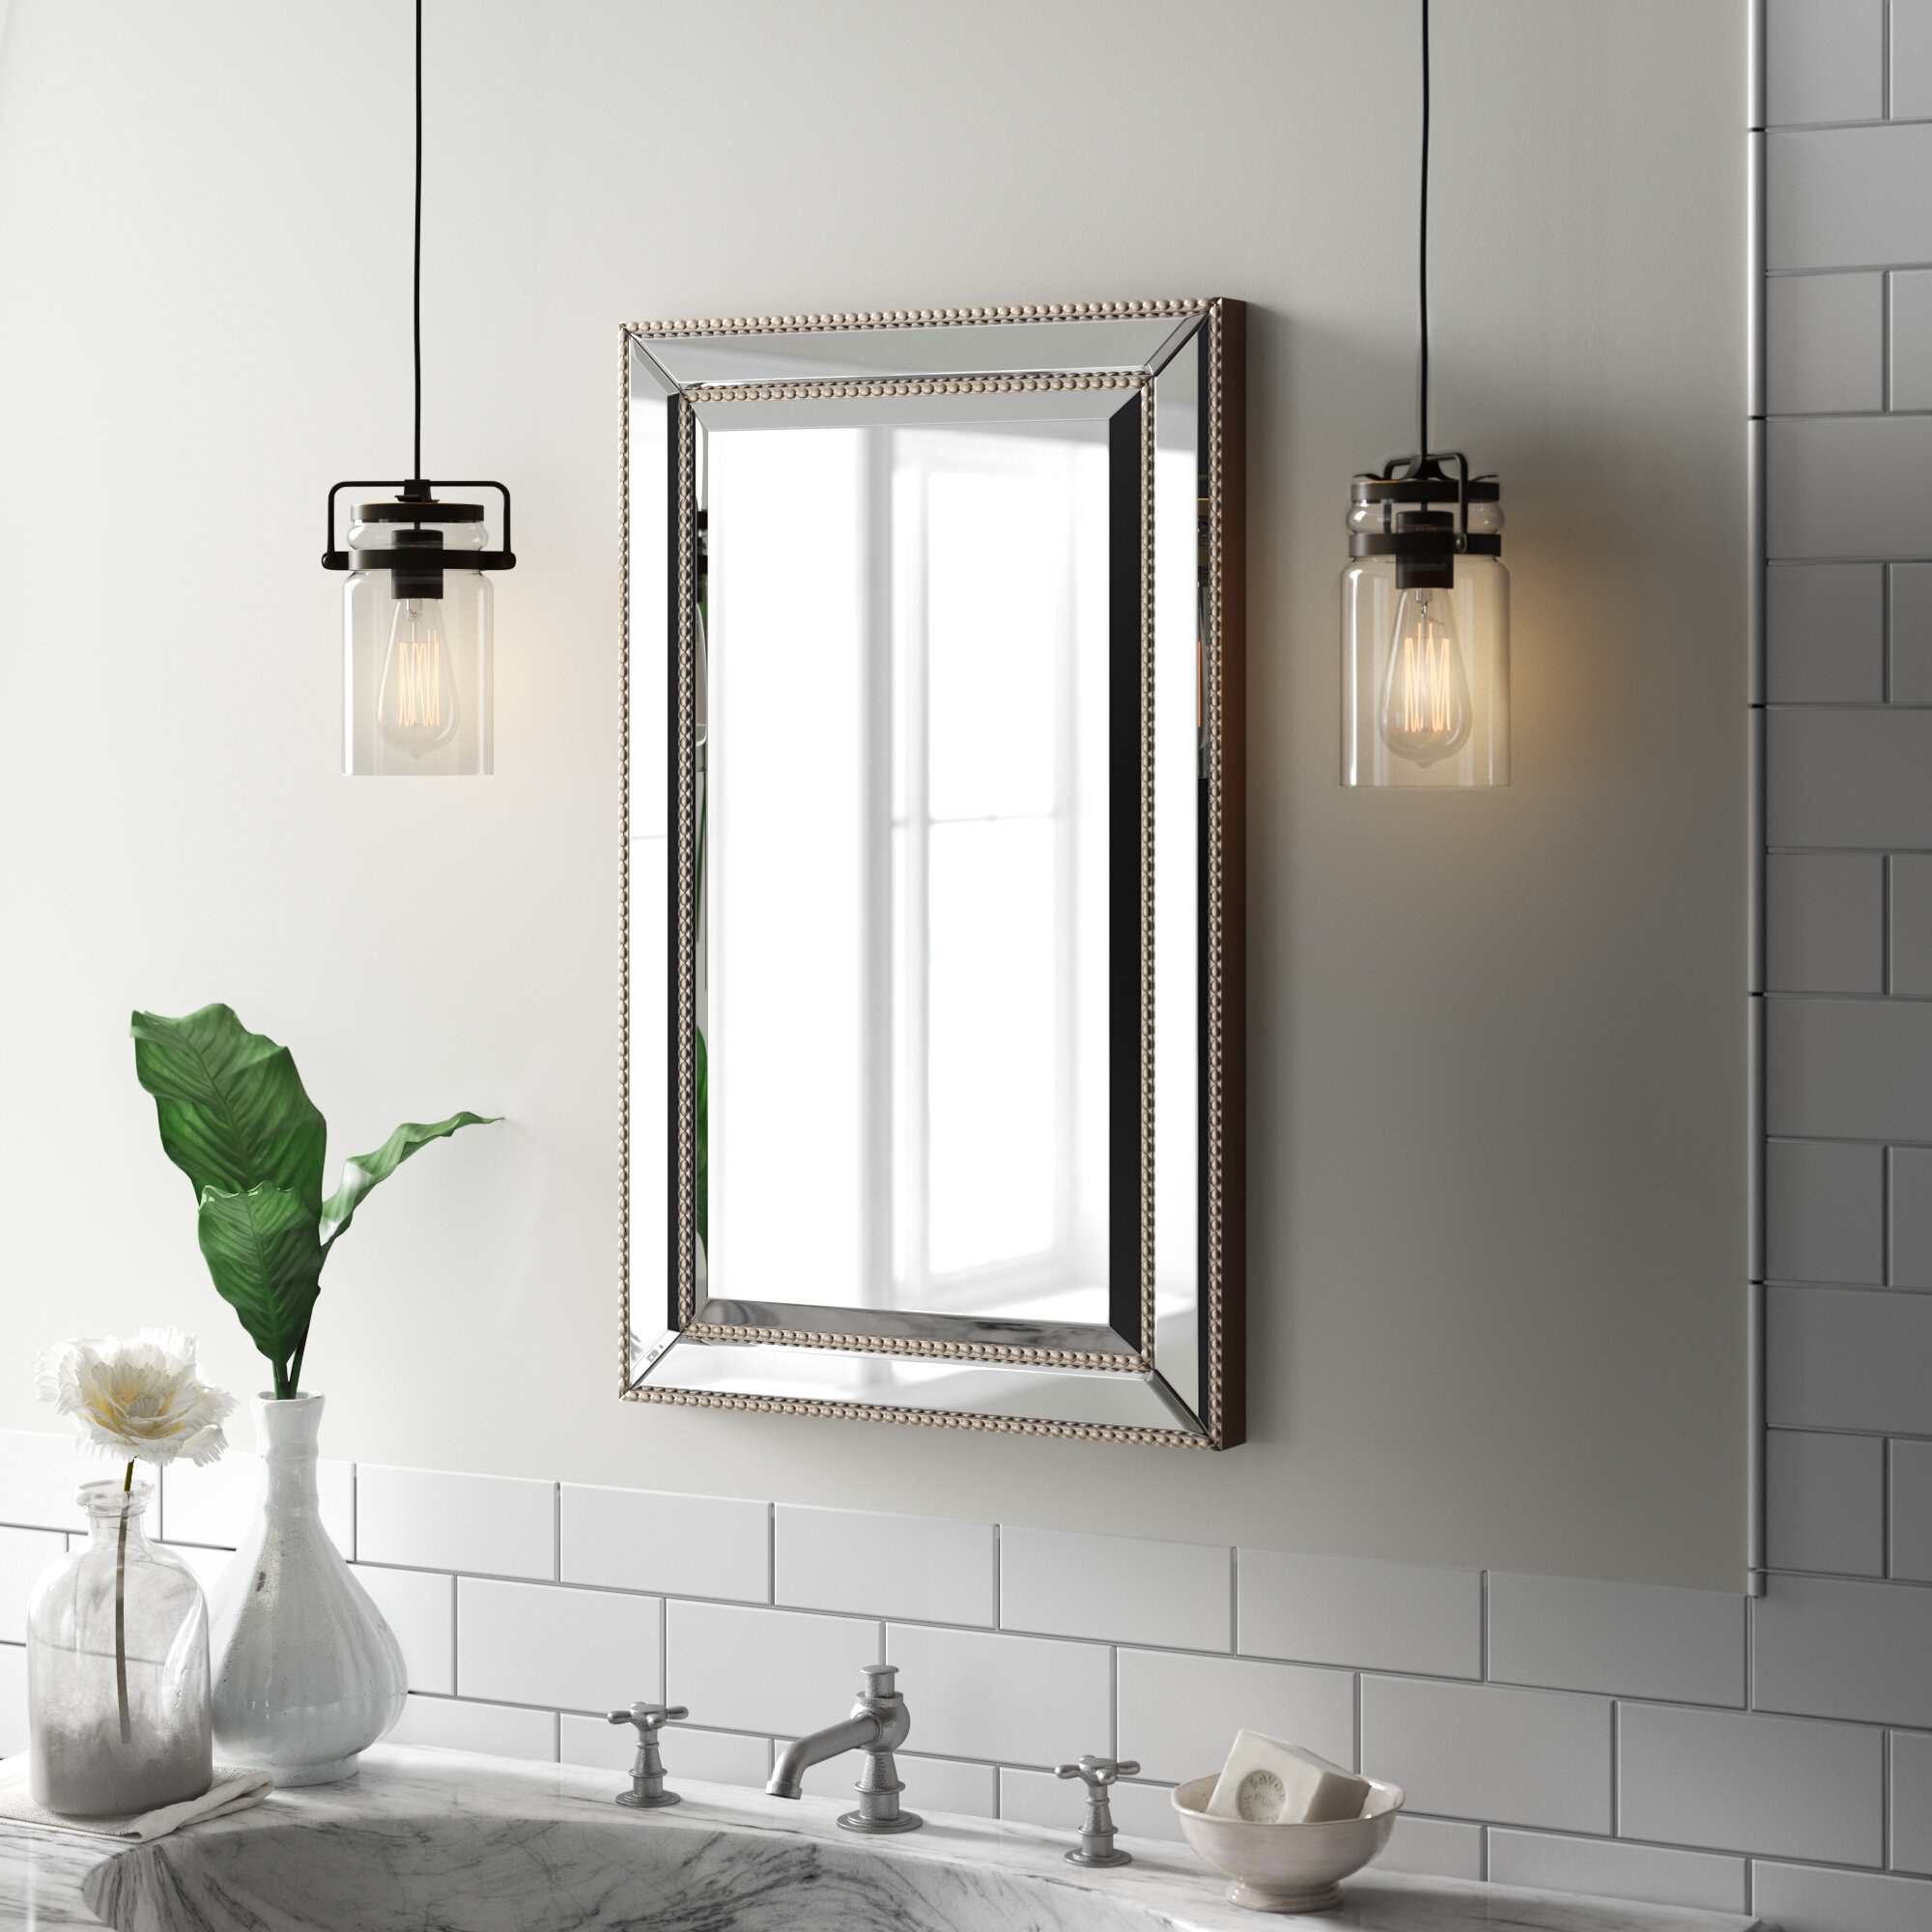 Mirrored Bathroom Medicine Cabinet
 Bathroom Medicine Cabinets Mirrors Recessed